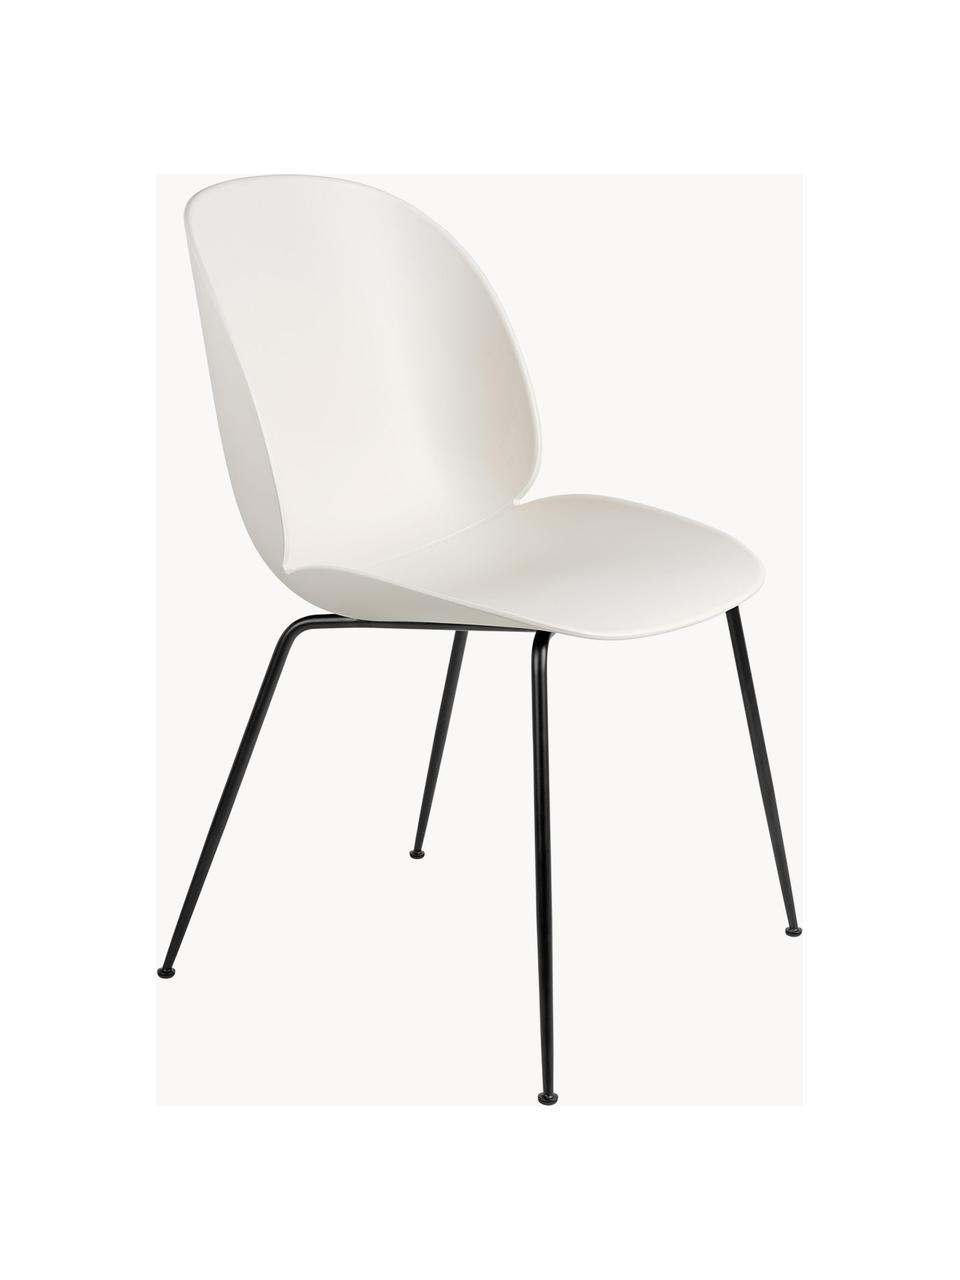 Krzesło ogrodowe z tworzywa sztucznego Beetle, Nogi: stal powlekana, Biały, czarny matowy, S 56 x G 58 cm